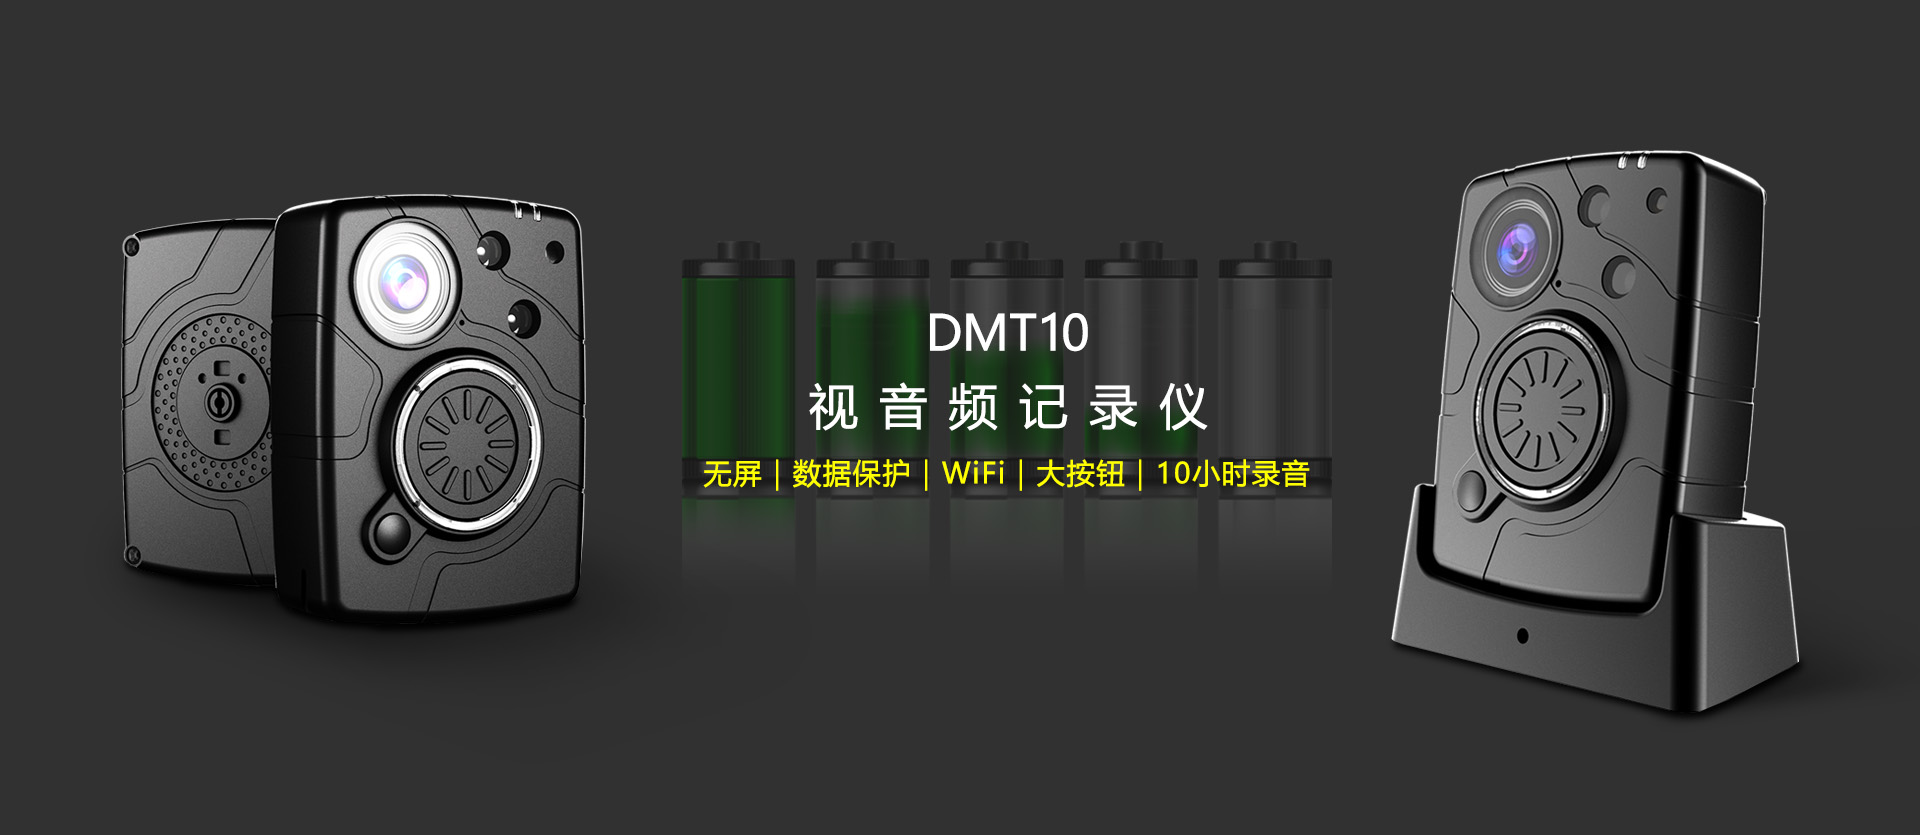 DMT10-zhongwen